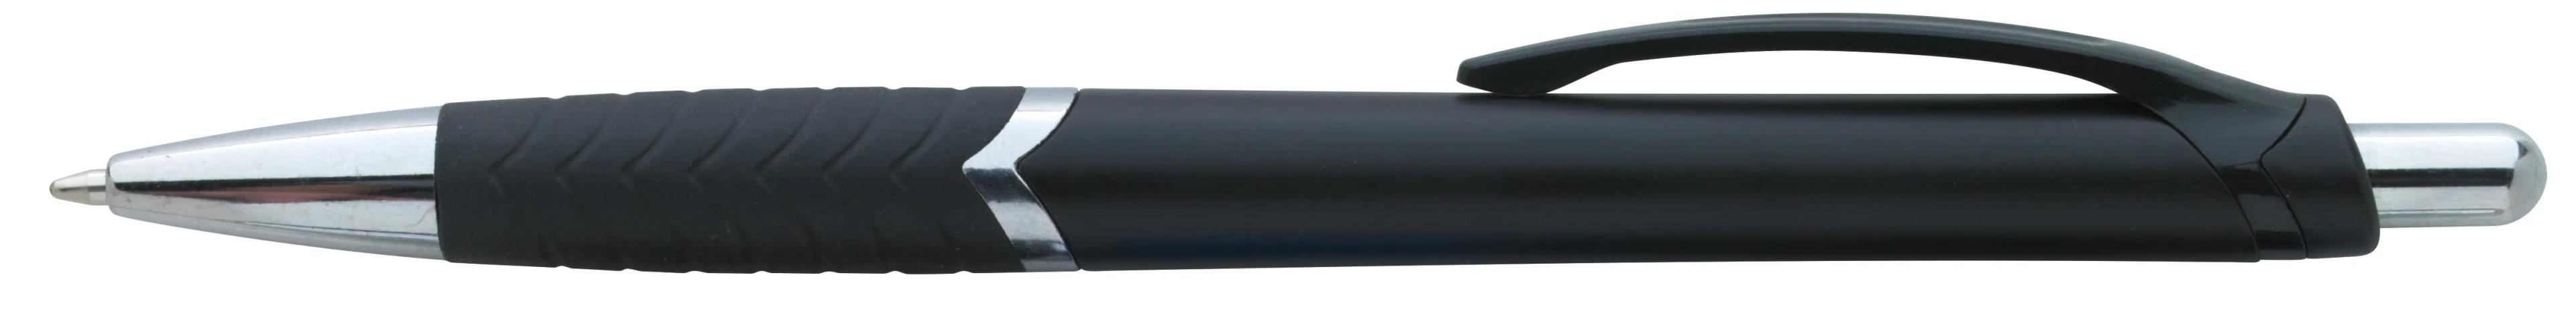 Arrow Metallic Pen 1 of 43